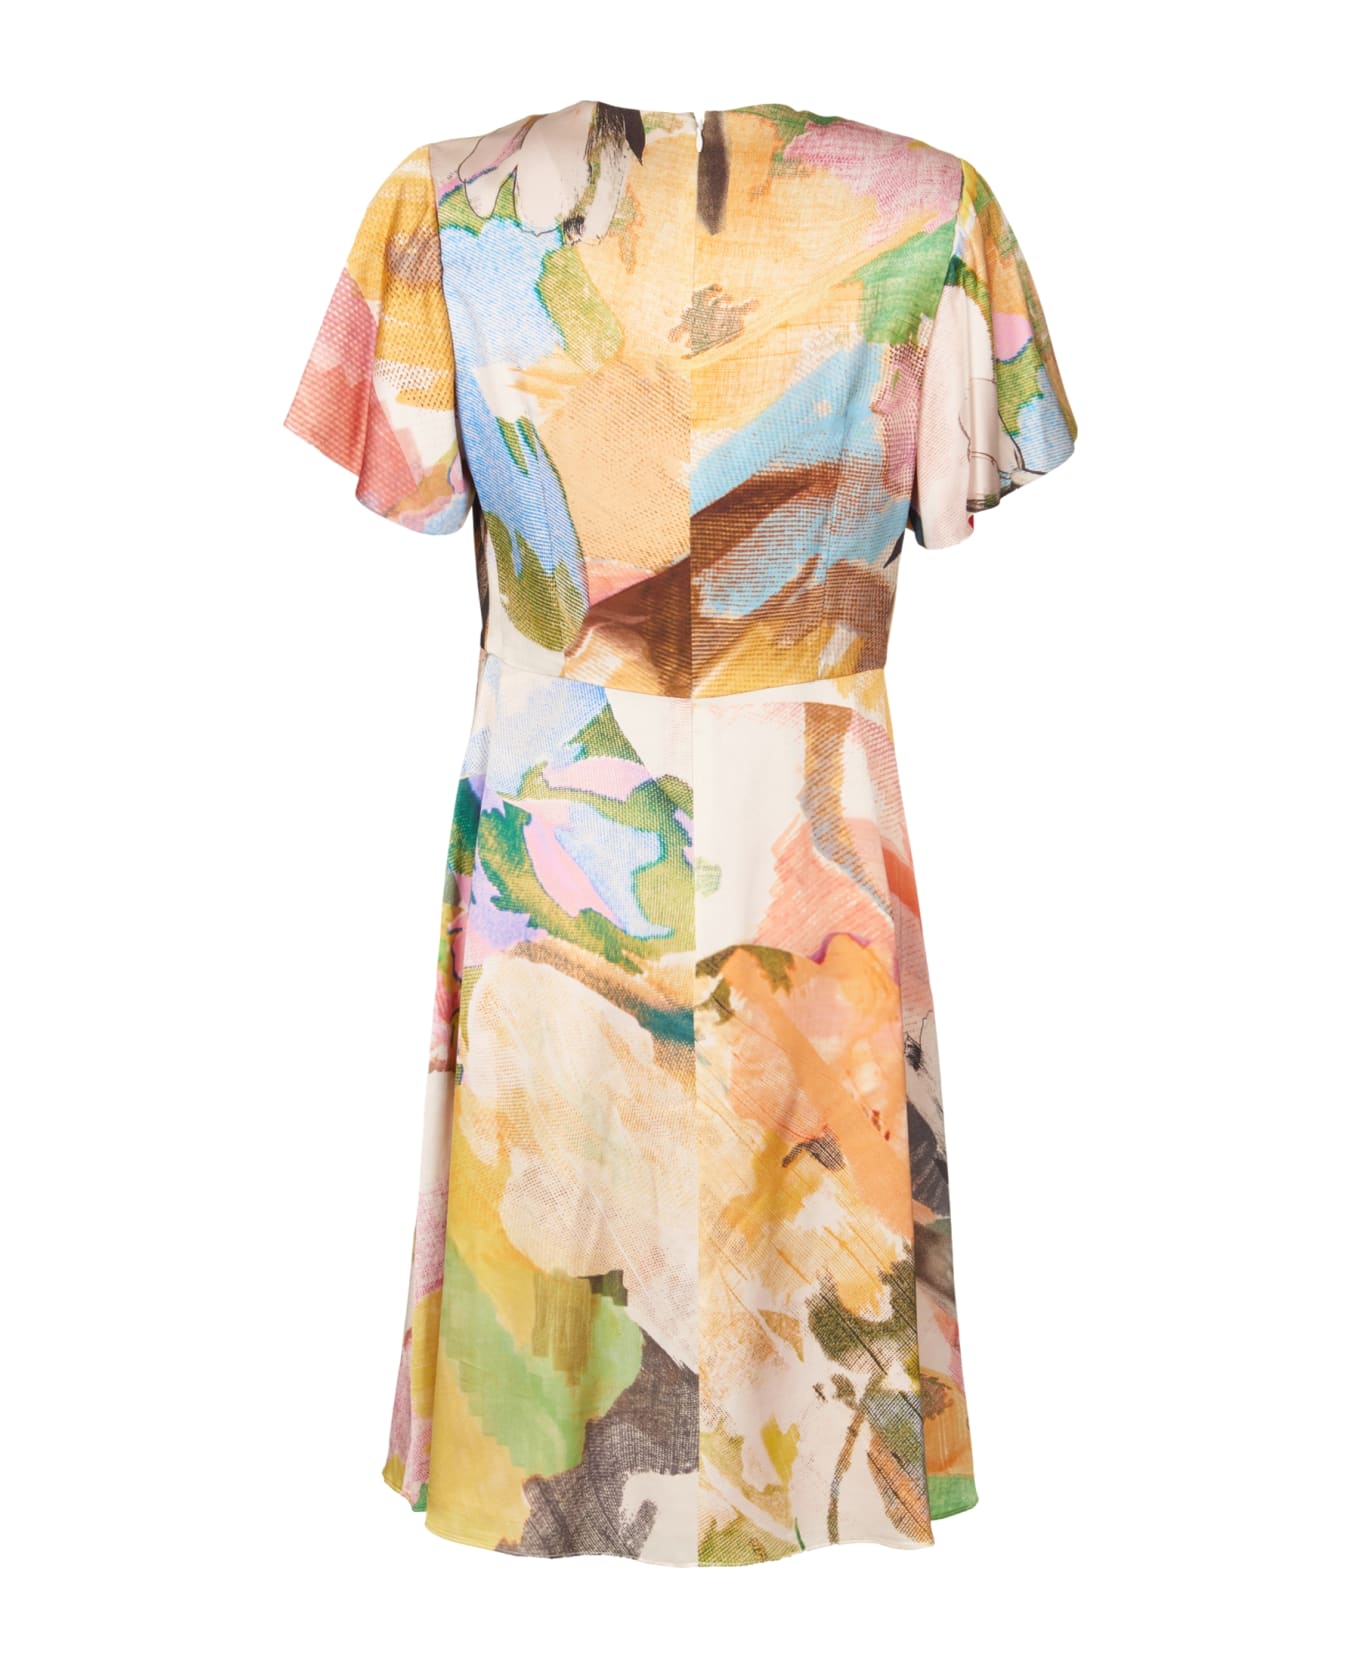 Paul Smith Dress - Multicolor